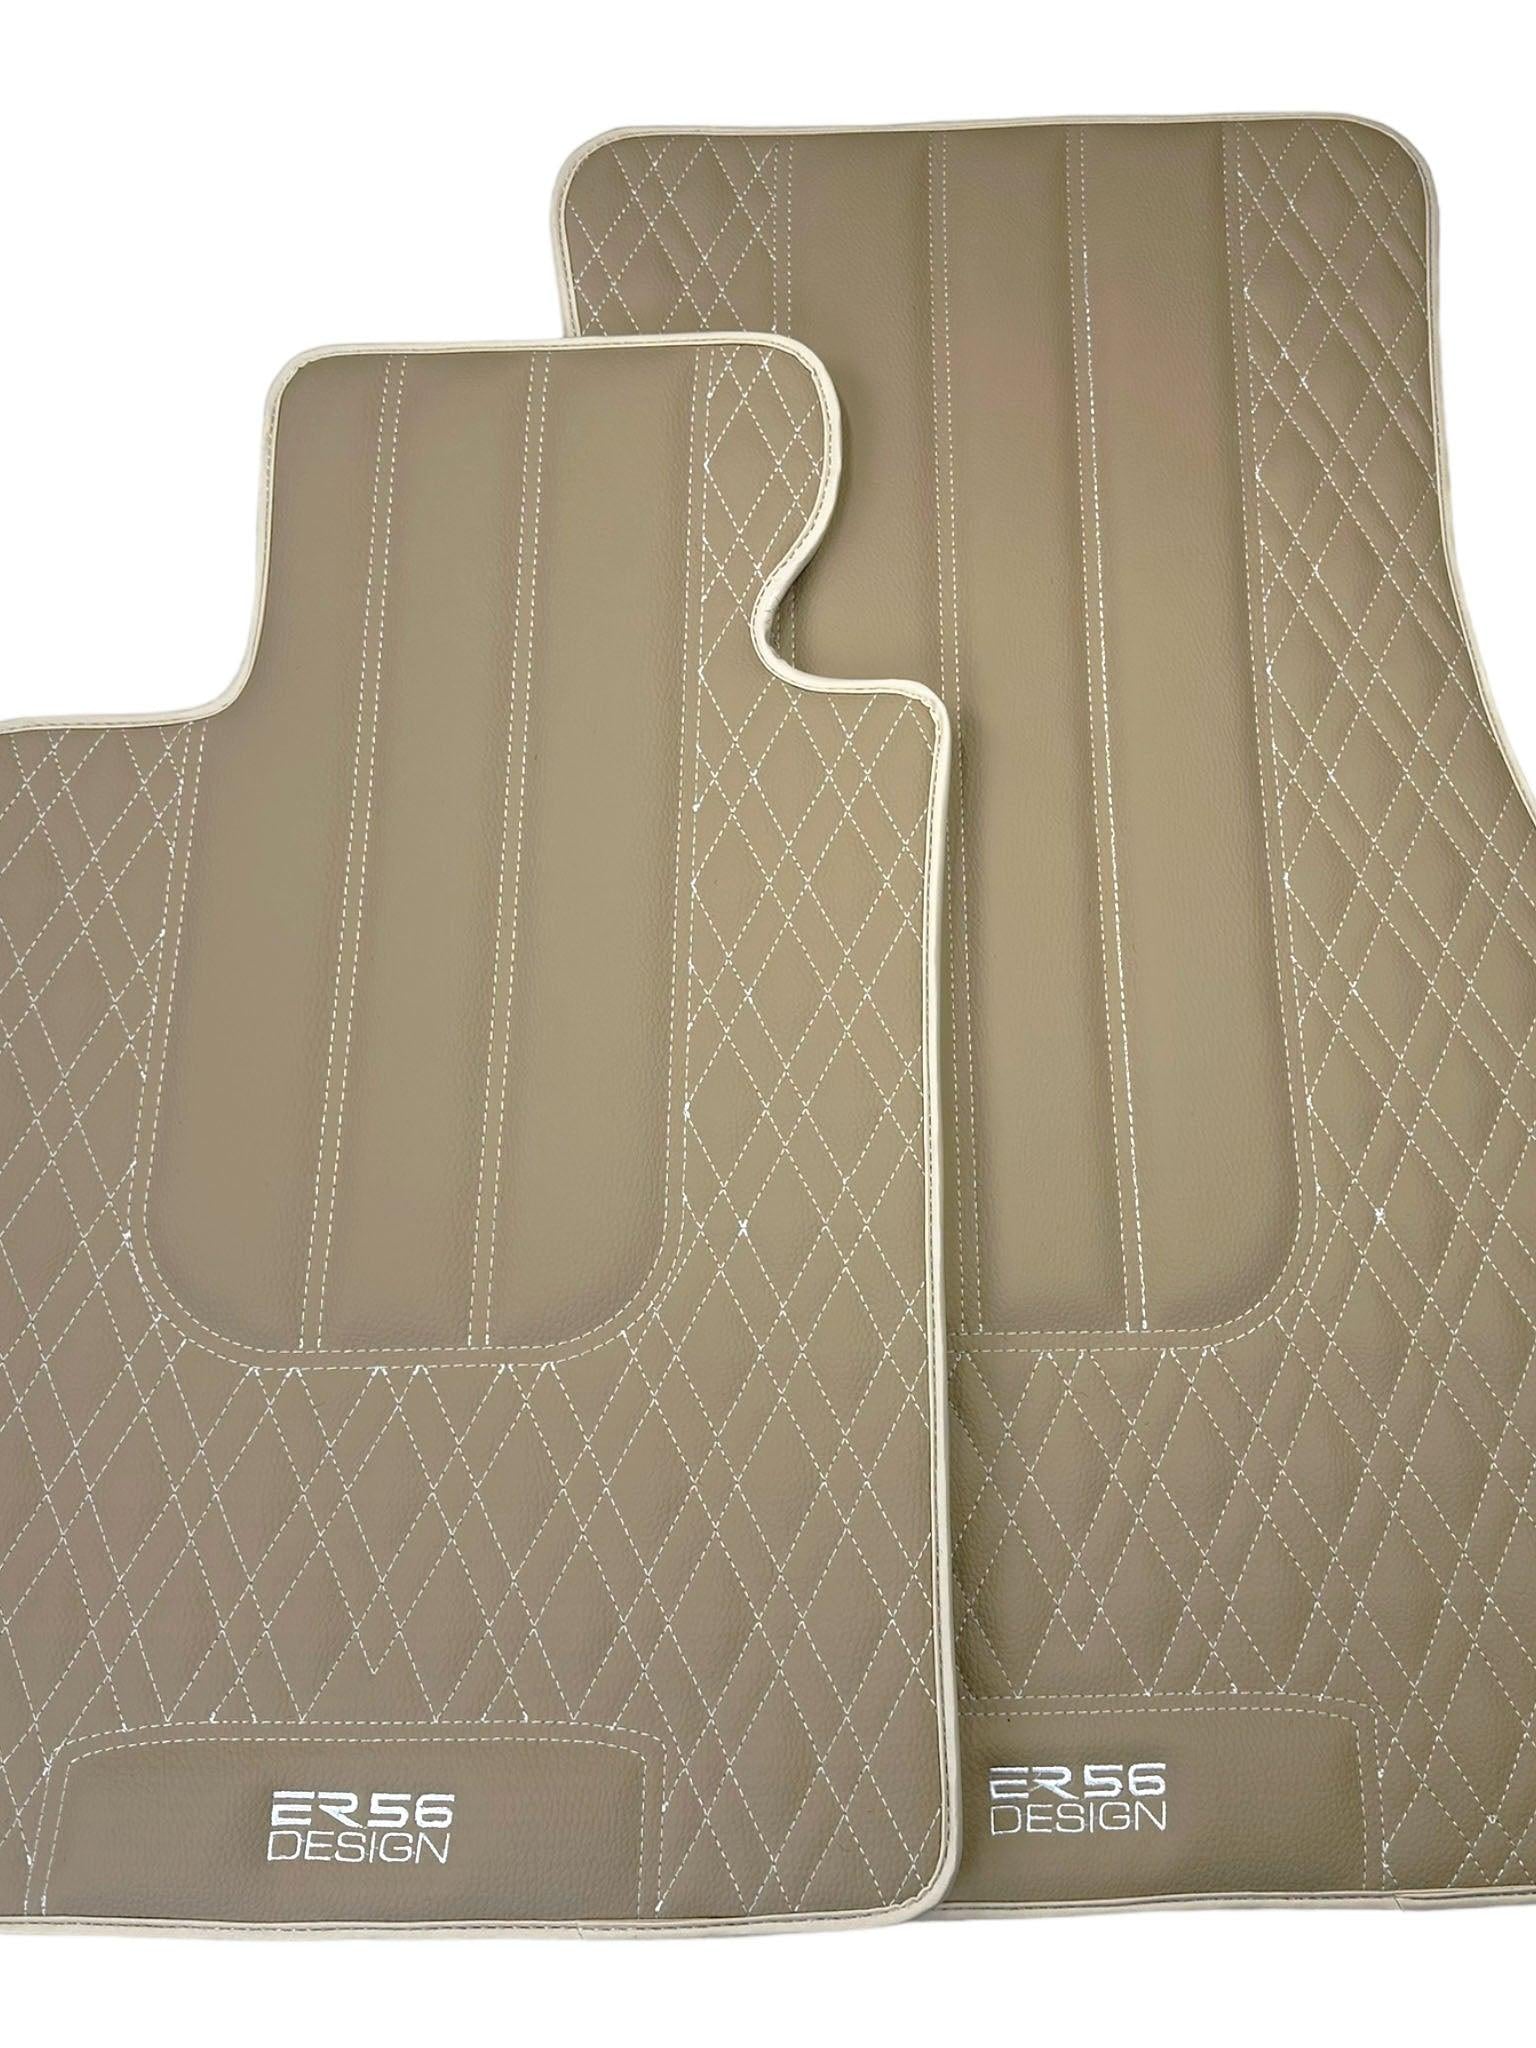 Beige Leather Floor Floor Mats For BMW 3 Series G20